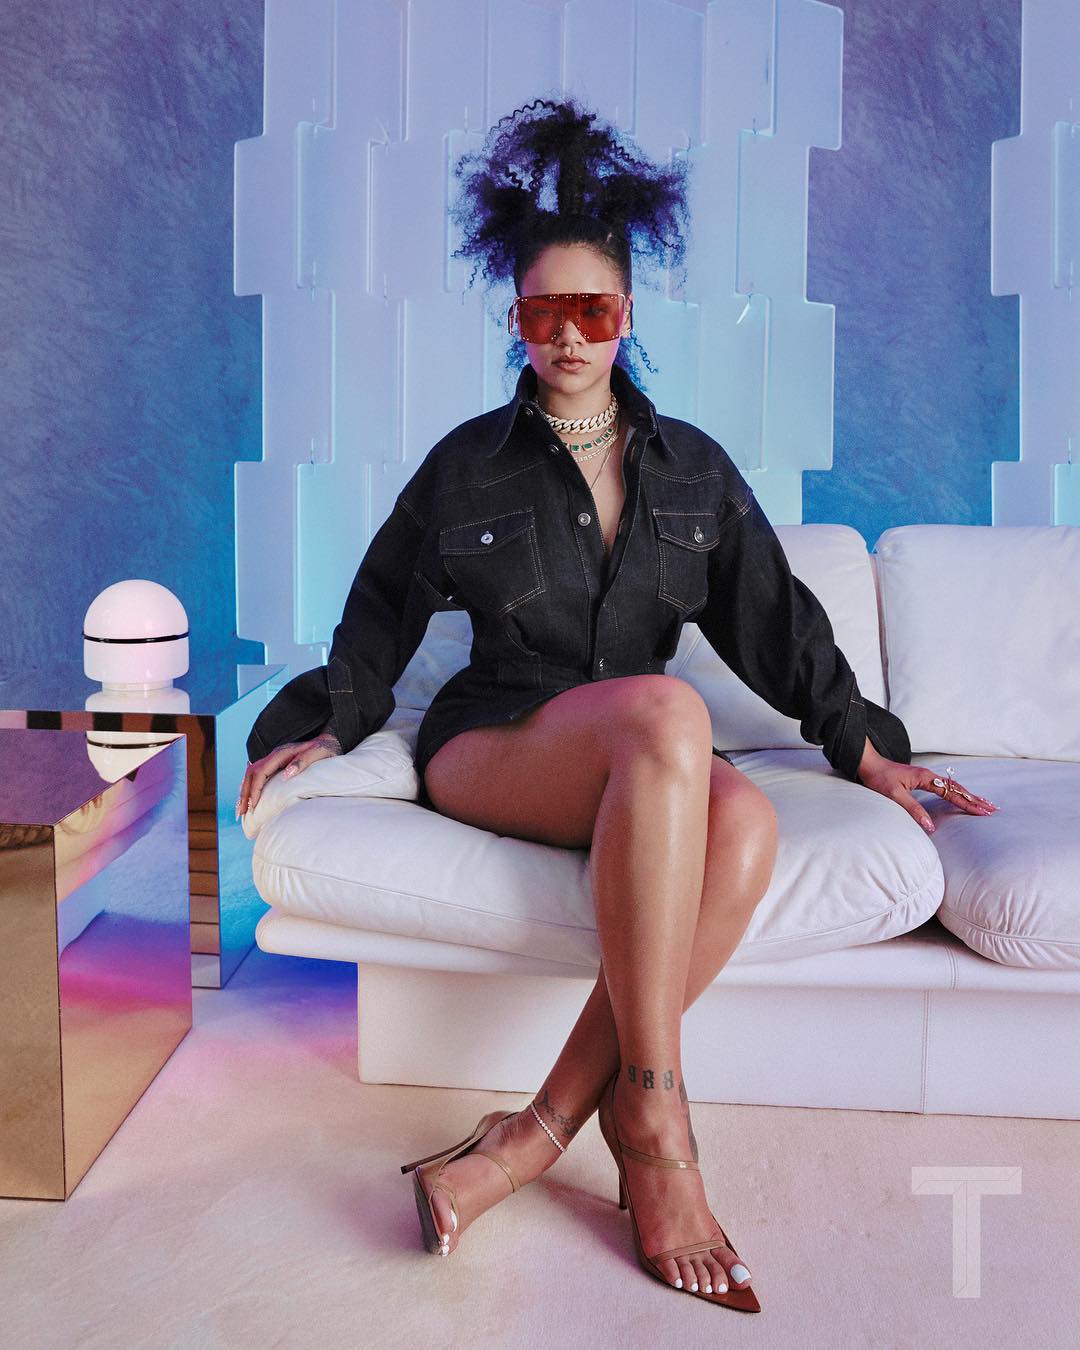 hình ảnh nóng bỏng của nữ ca sĩ đình đám Rihanna ảnh 7